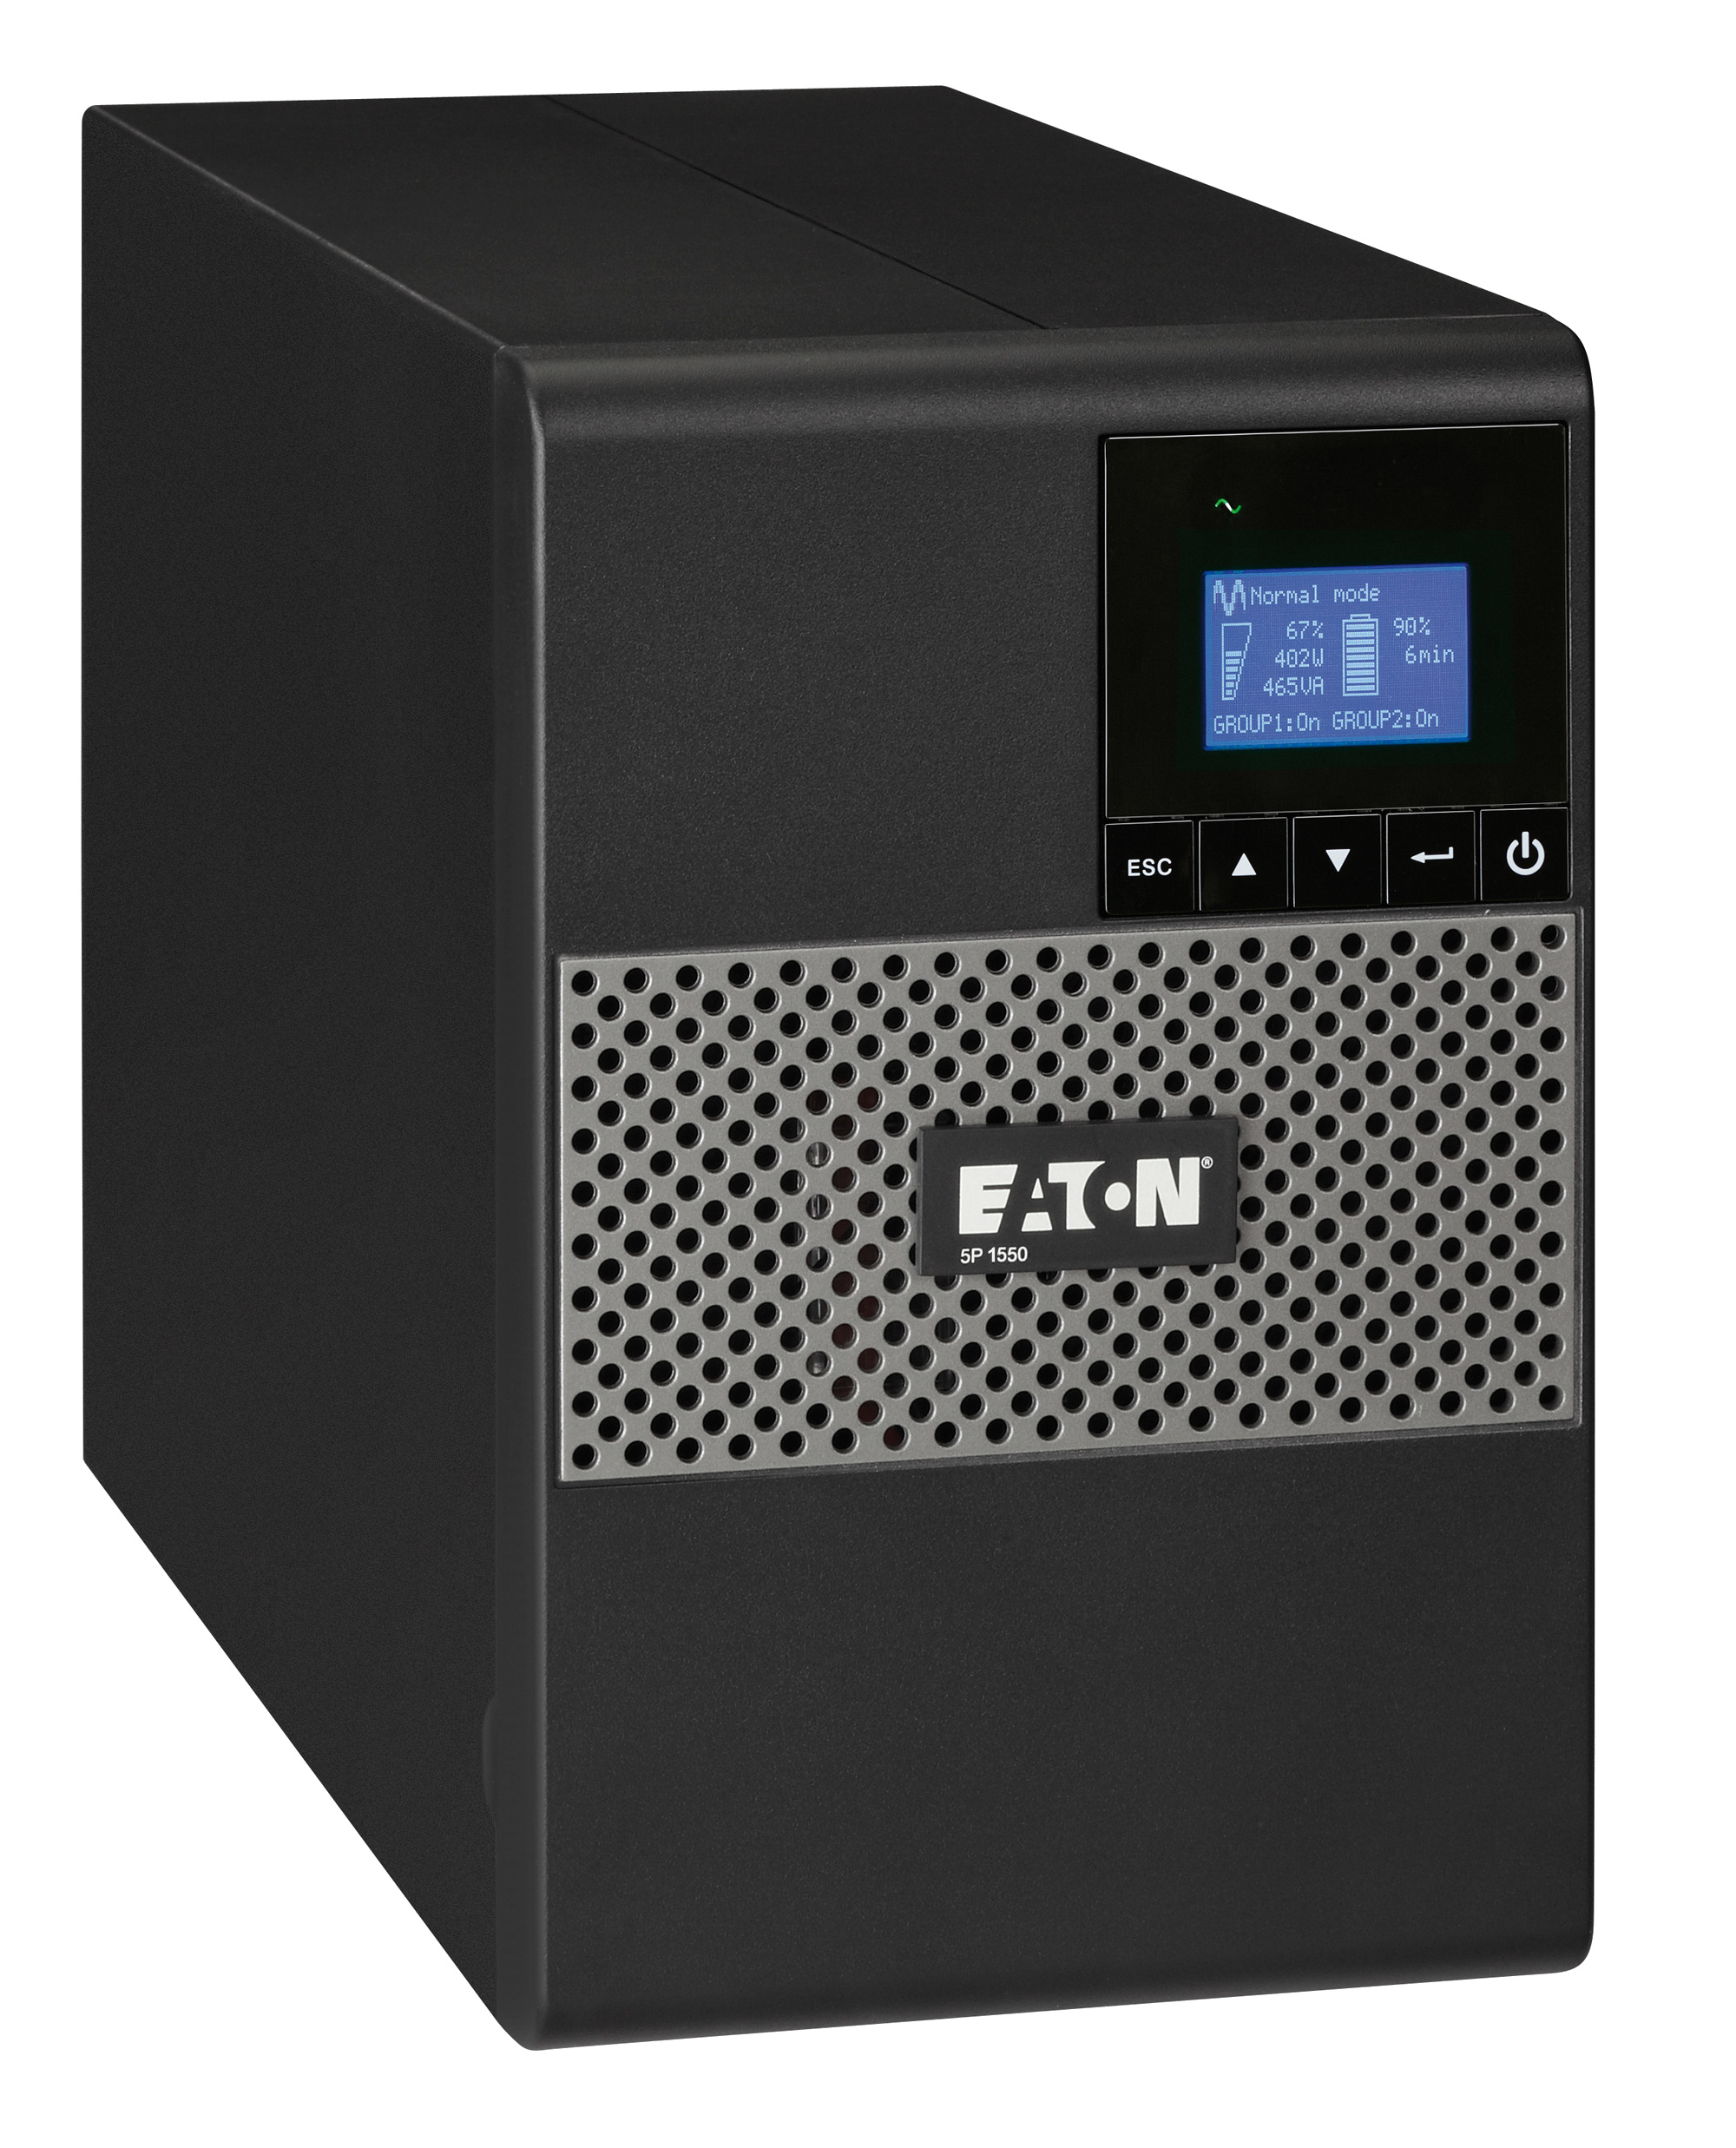 ИБП Eaton 5P 1550i, 1550VA, 1100W, IEC, розеток - 8, USB, черный (5P1550i)